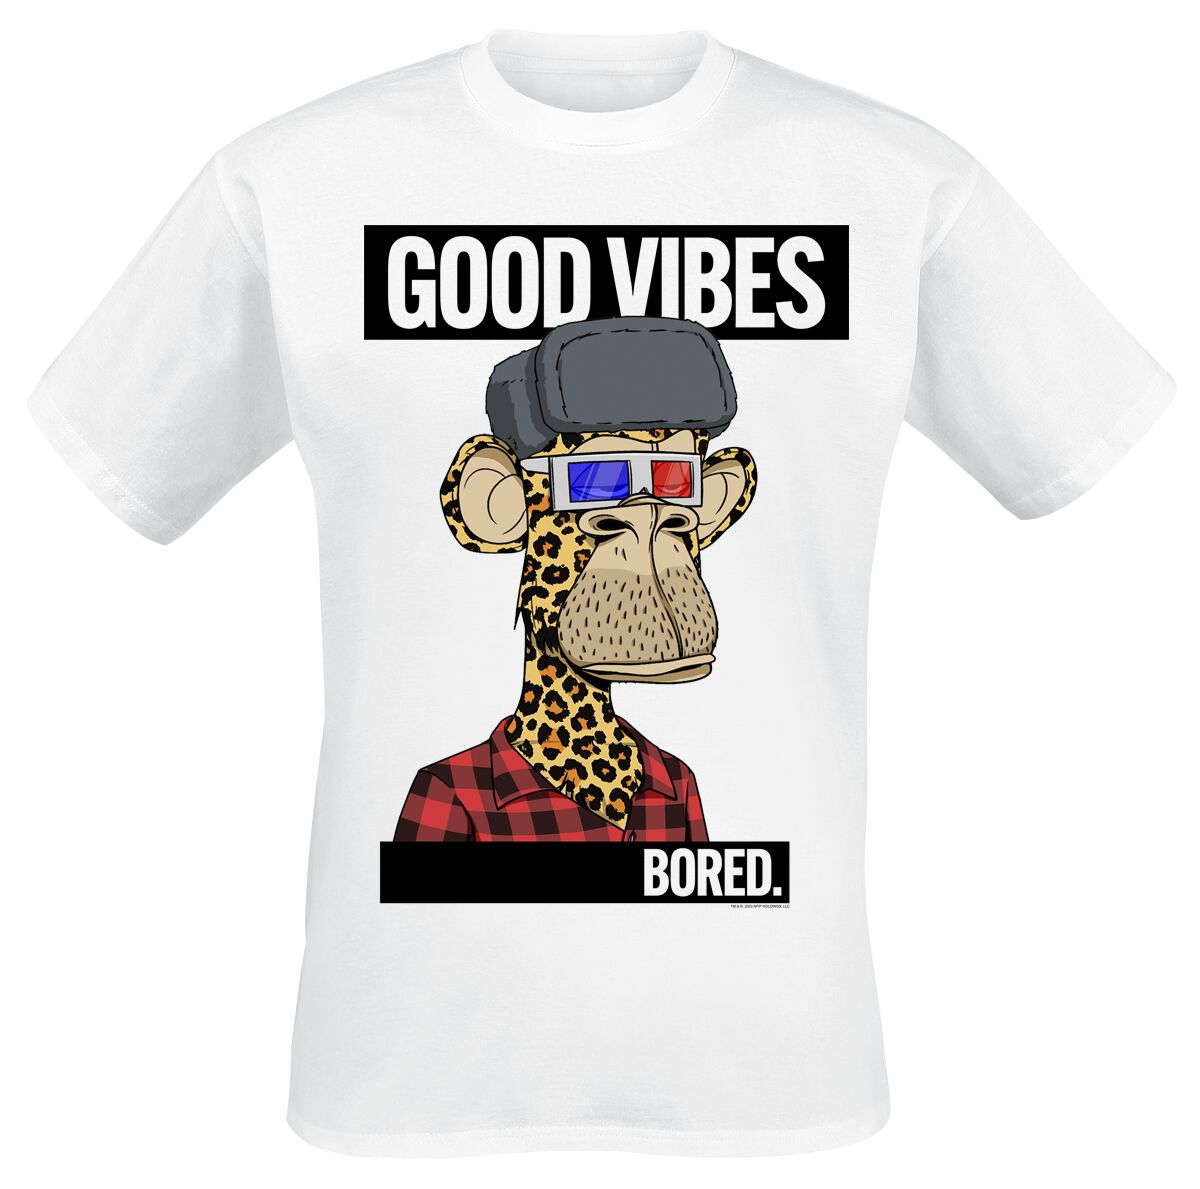 Bored Of Directors T-Shirt - Good Vibes - S bis XXL - für Männer - Größe L - weiß  - EMP exklusives Merchandise!